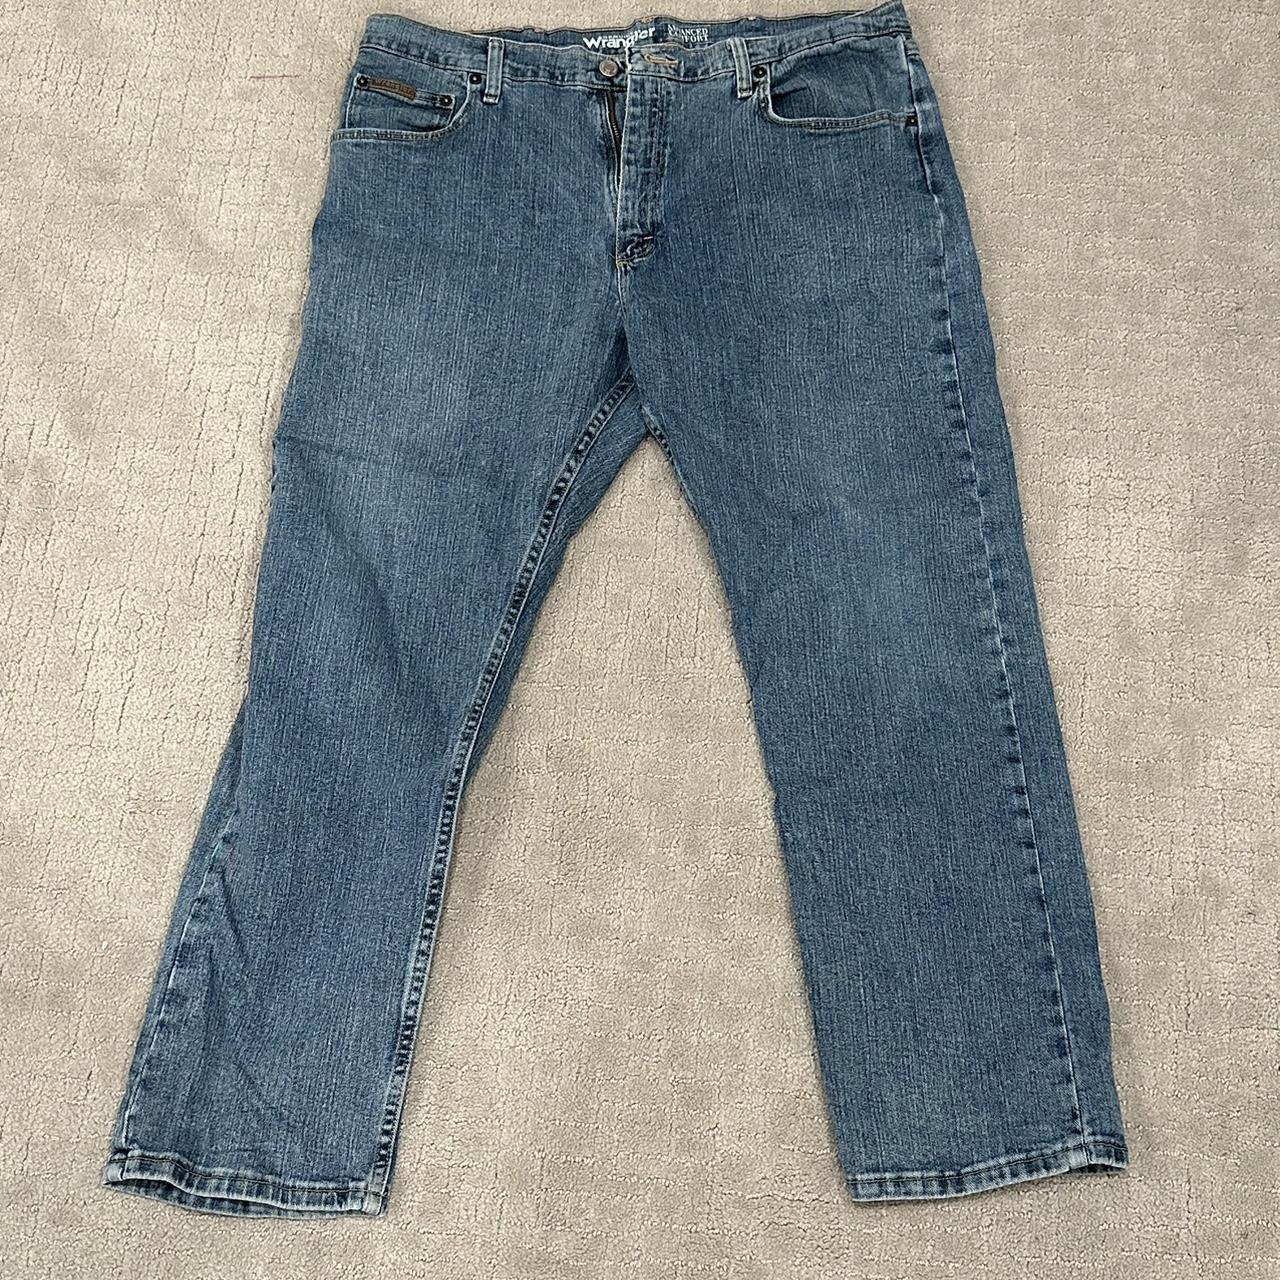 farmer jeans - Depop